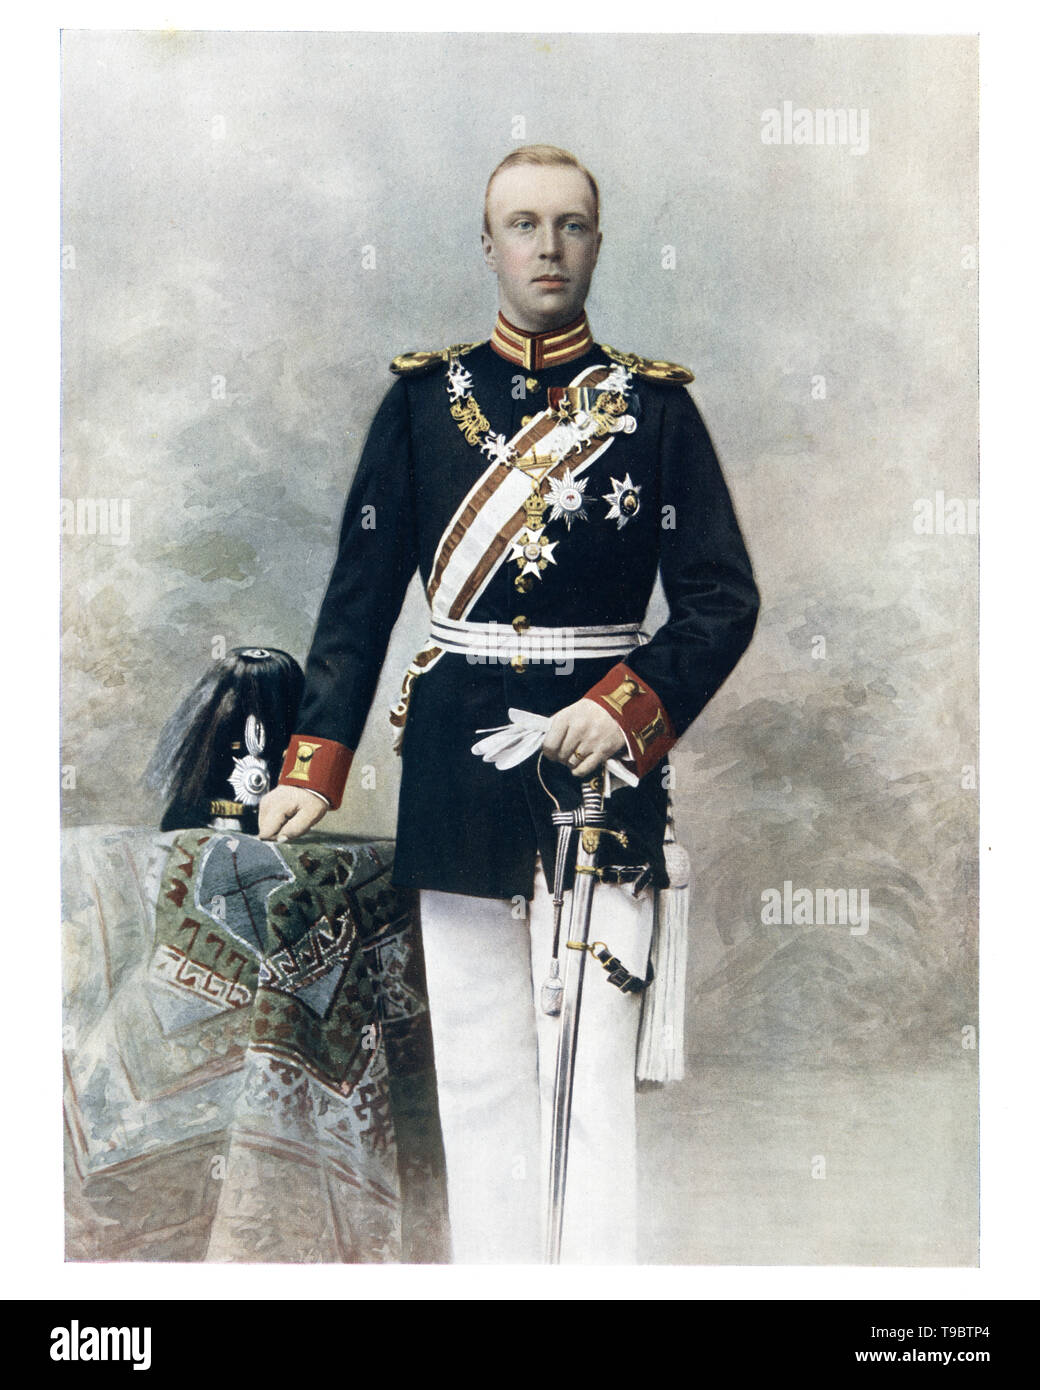 Il Duca Enrico di Mecklenburg-Schwerin era principe consorte dei Paesi Bassi come il marito della Regina Guglielmina dei Paesi Bassi. Foto Stock